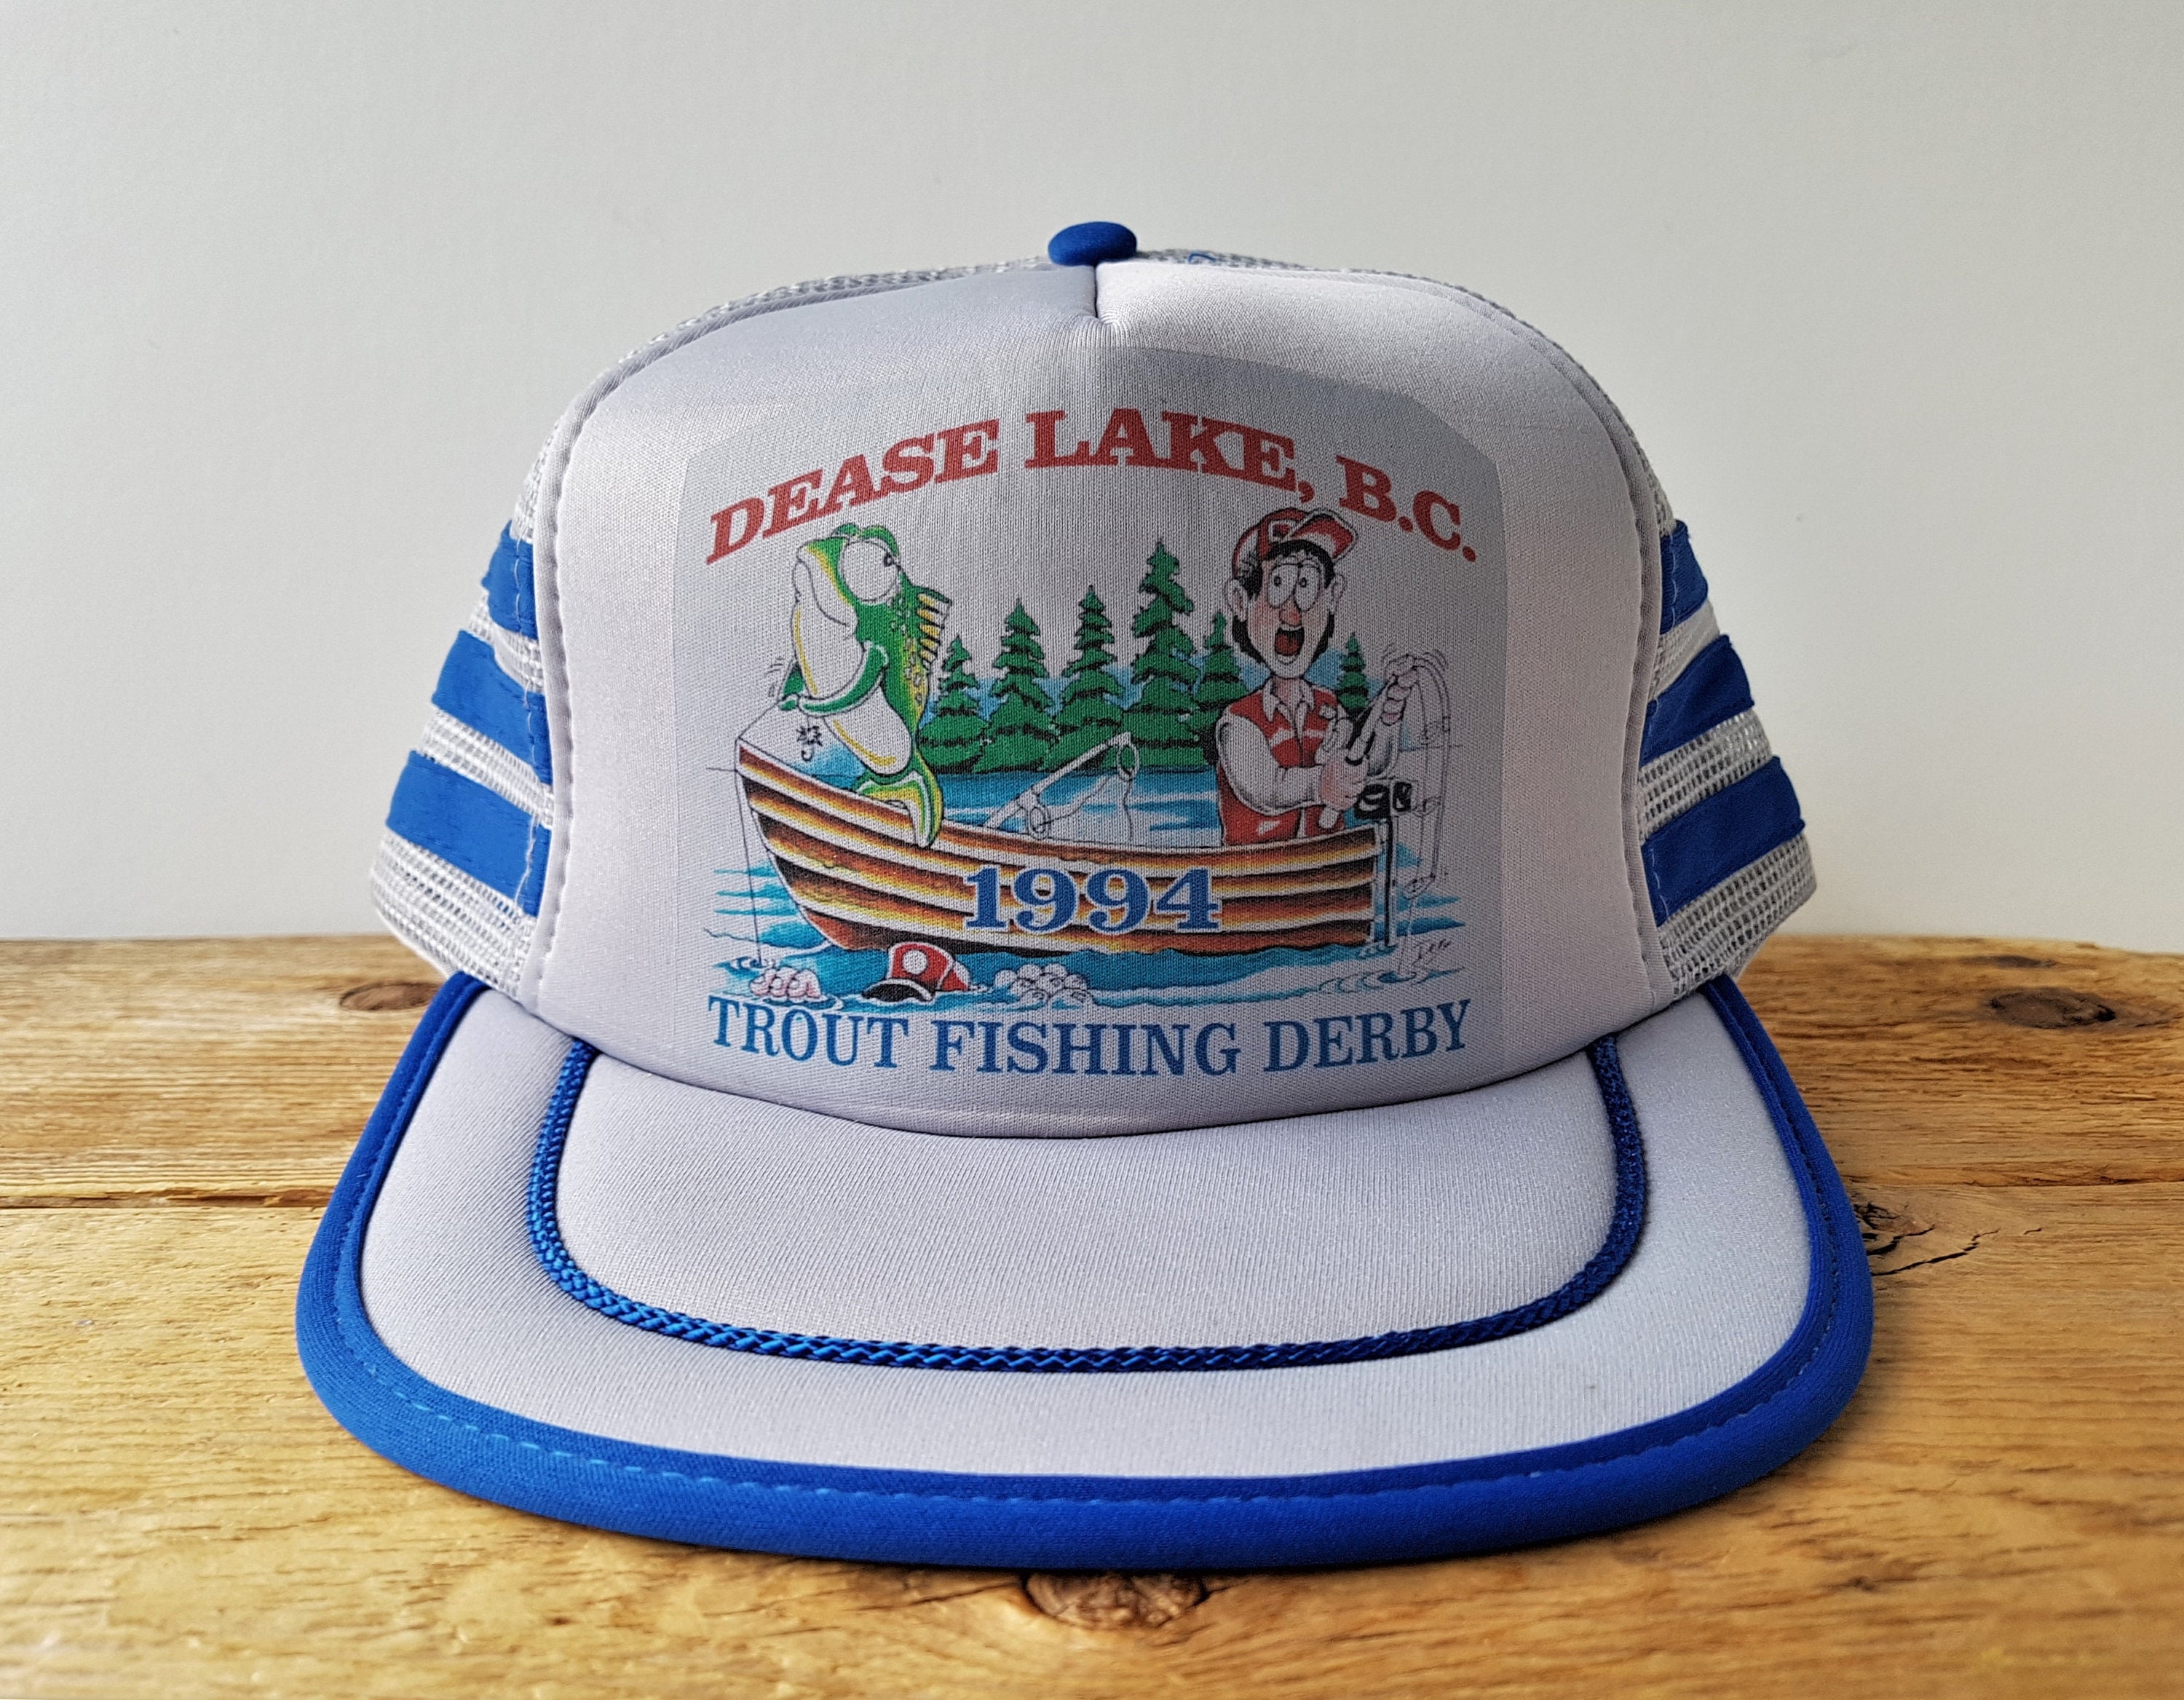 Vintage 90s DEASE LAKE B.C. 1994 Trout Fishing Derby Trucker Hat 3